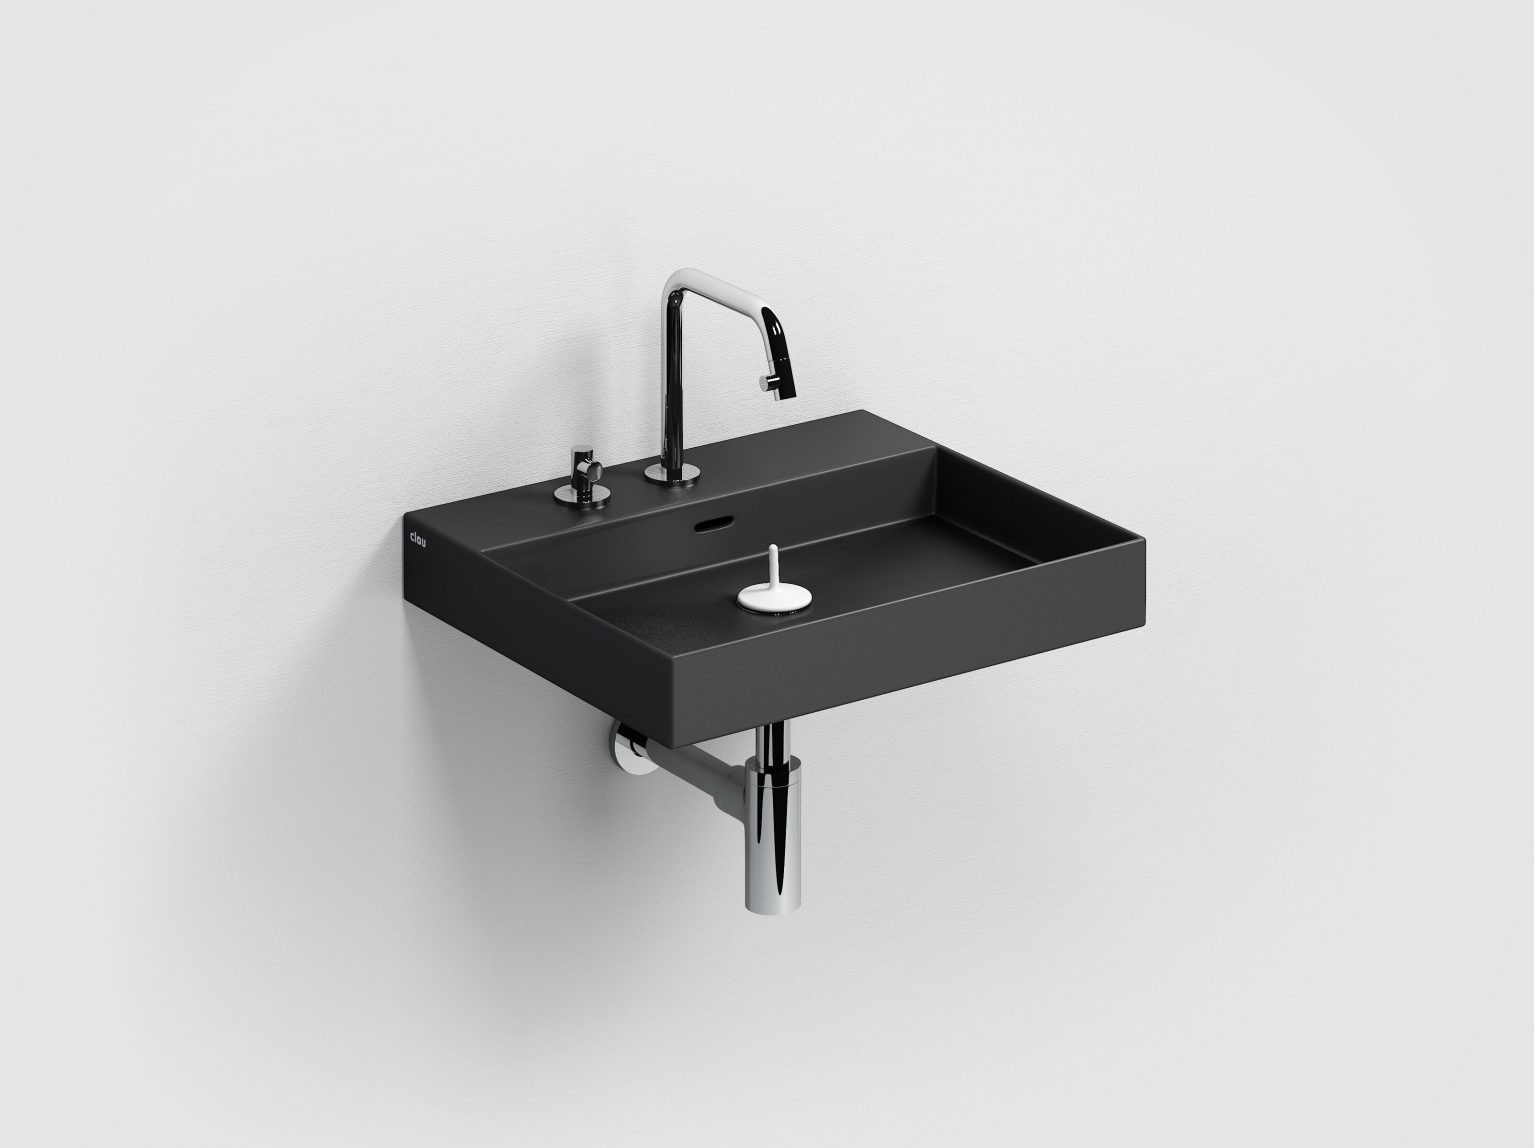 wastafel-wand-opzetwastafel-mat-zwart-keramiek-toilet-badkamer-luxe-sanitair-NewWashMe-clou-CL0230430-wasbak-kraangaten-zonder-afvoer-plug-dunne-rand-Sp-shadow